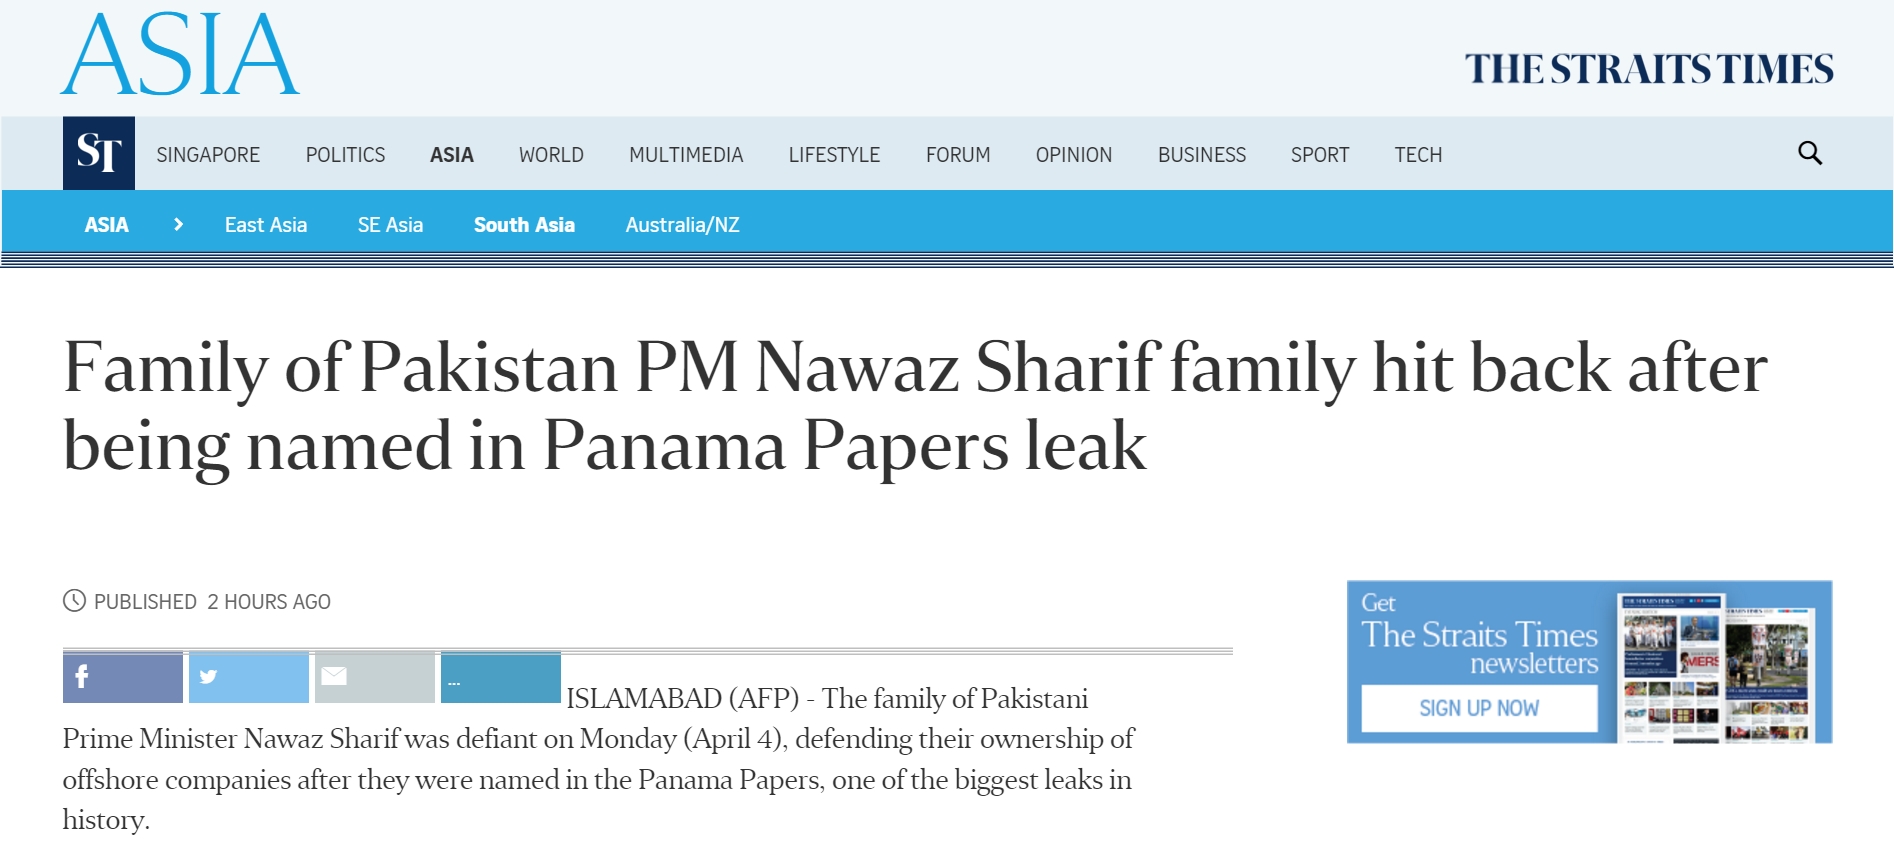 Quatre enfants du Premier ministre pakistanais Nawaz Sharif sont nommés dans l'affaire des "Panama papers". Copie d'écran du "Straits Times", le 4 avril 2016.